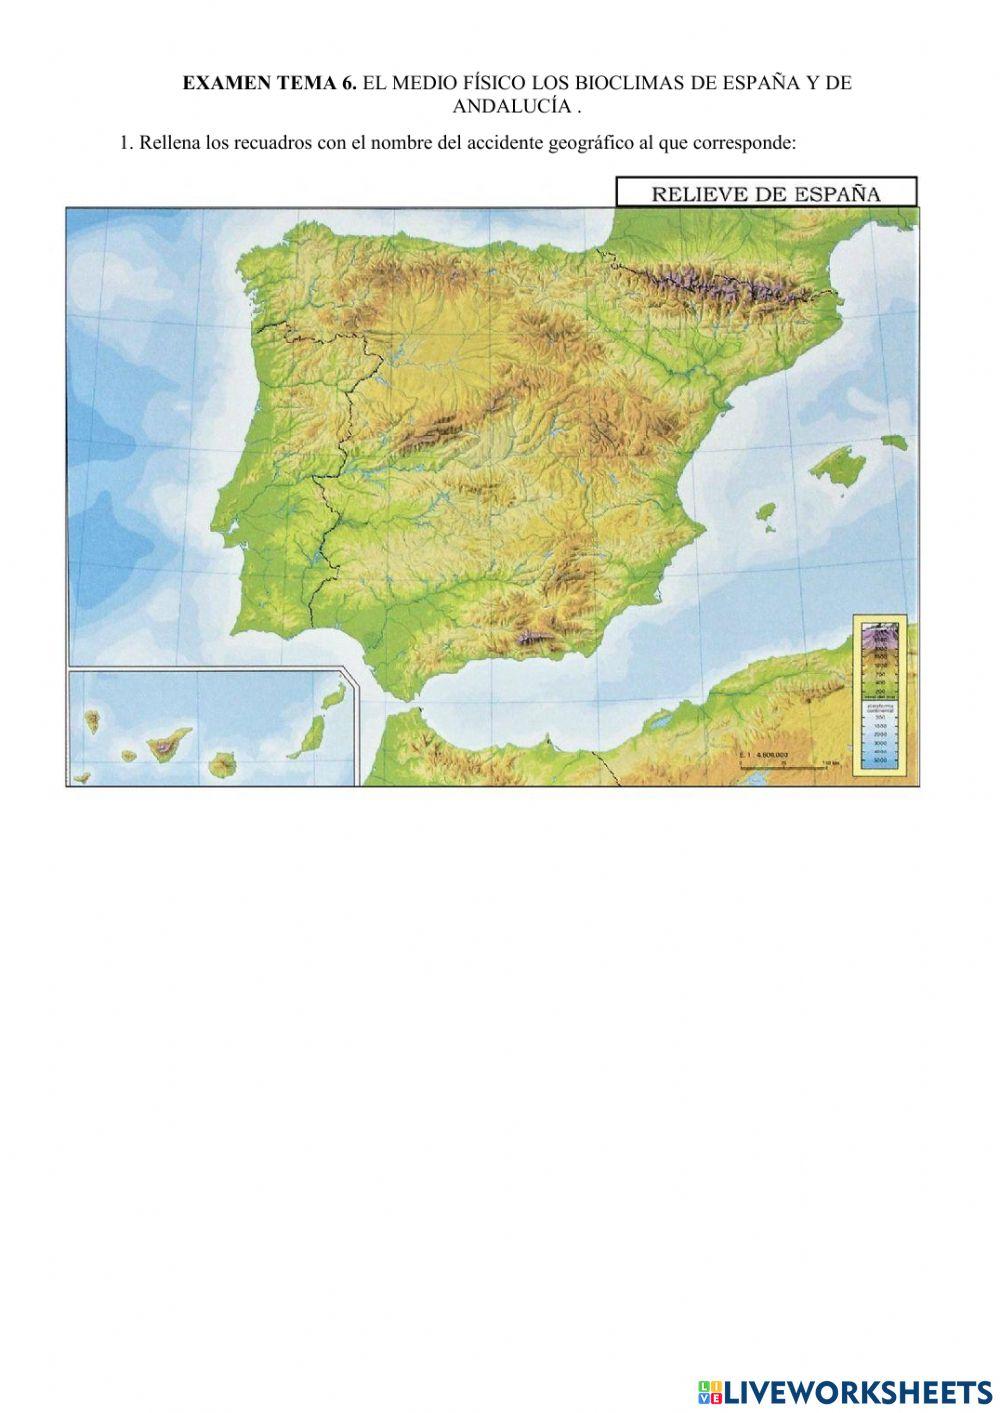 Relieve, ríos y climas de España